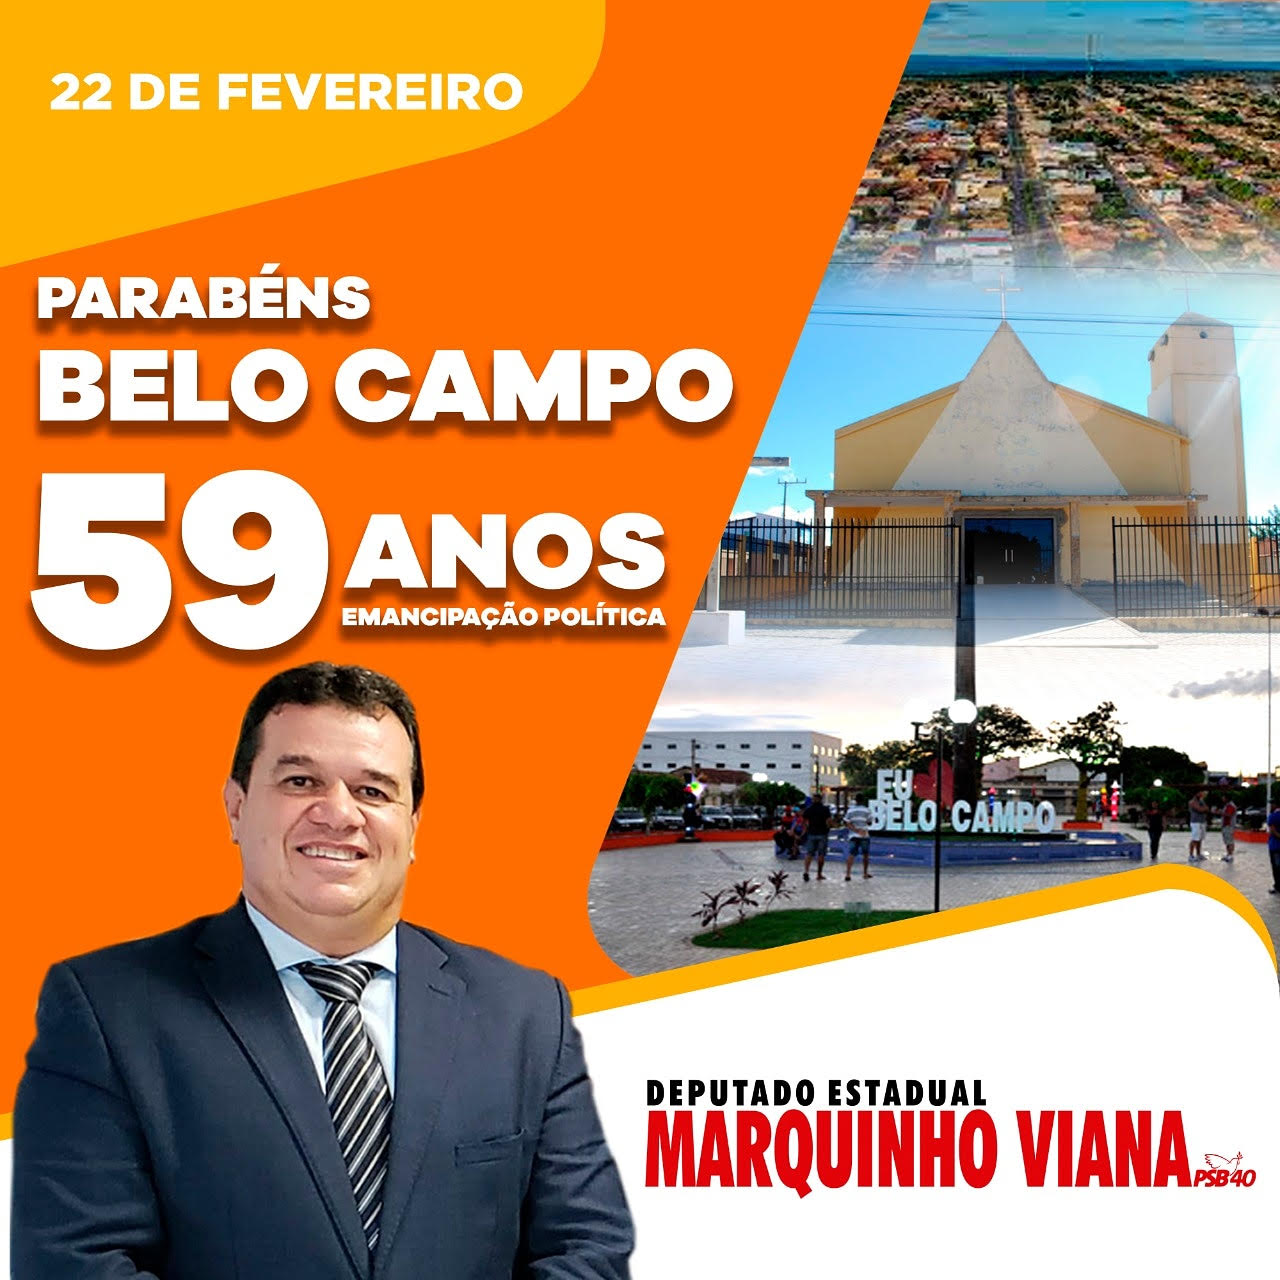 24/02: Deputado Marquinho Viana parabeniza Belo Campo pelos 59 anos de emancipação política